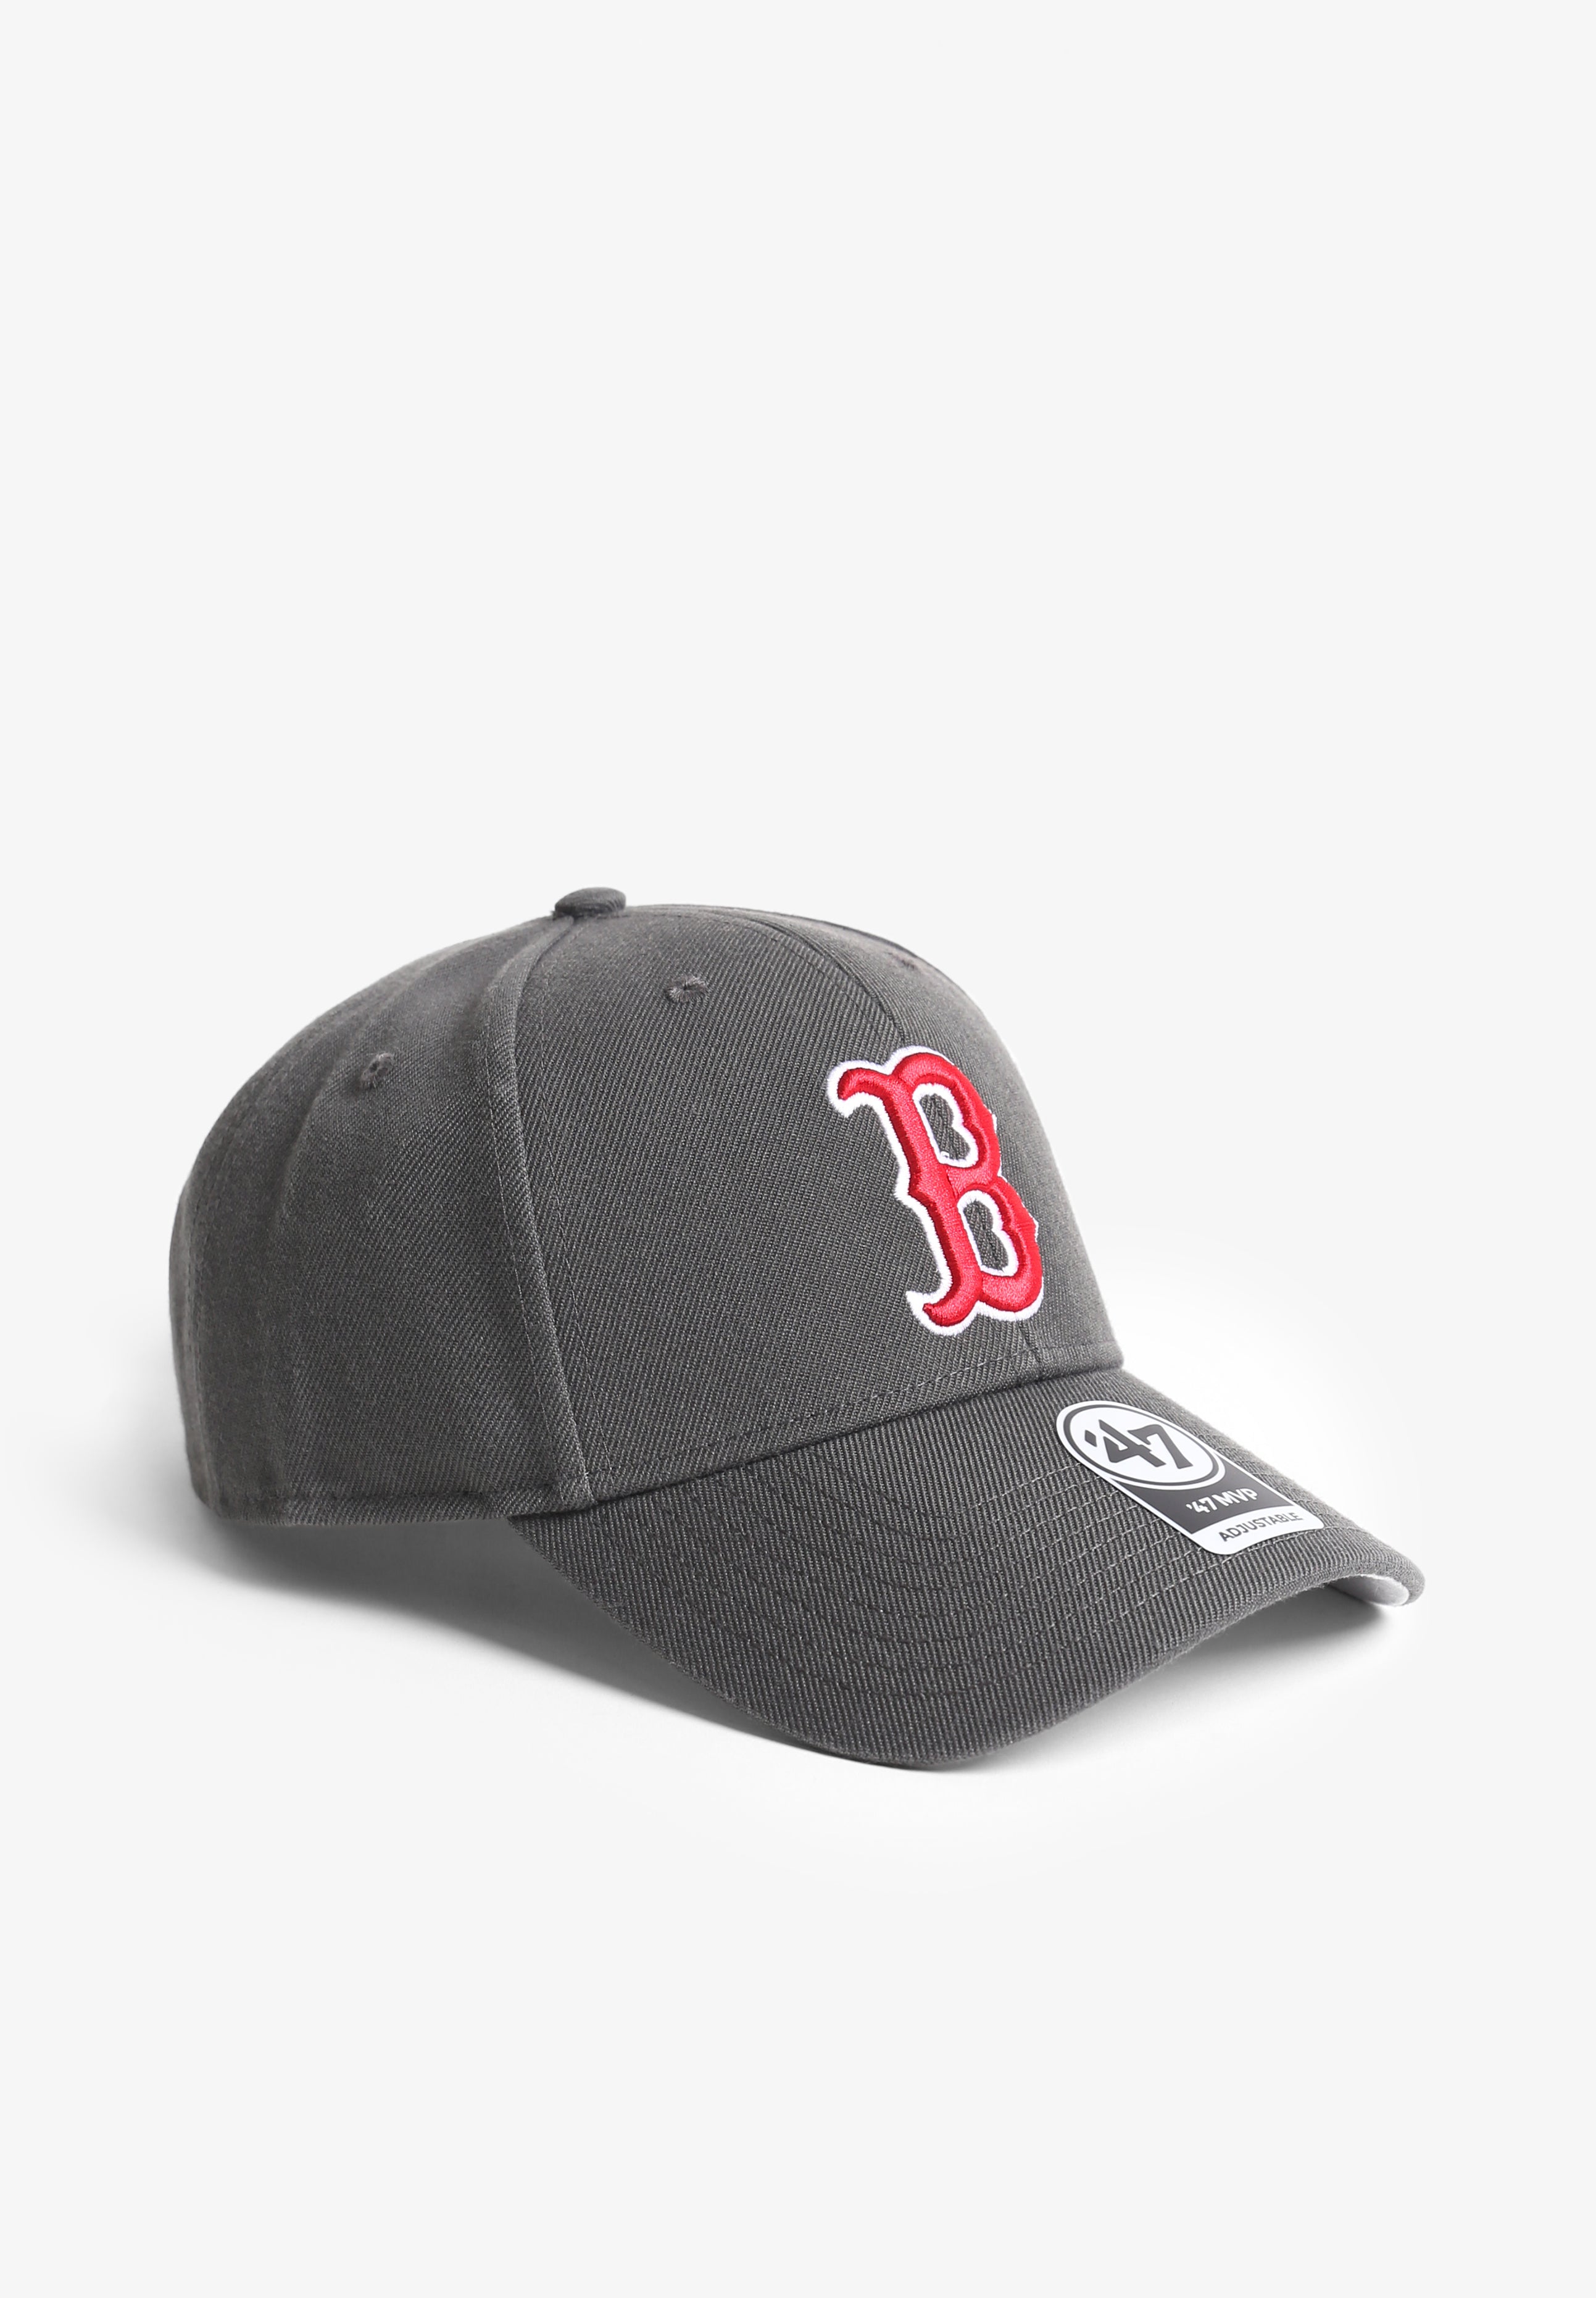 47 BRAND | GORRA MLB BOSTON RED SOX